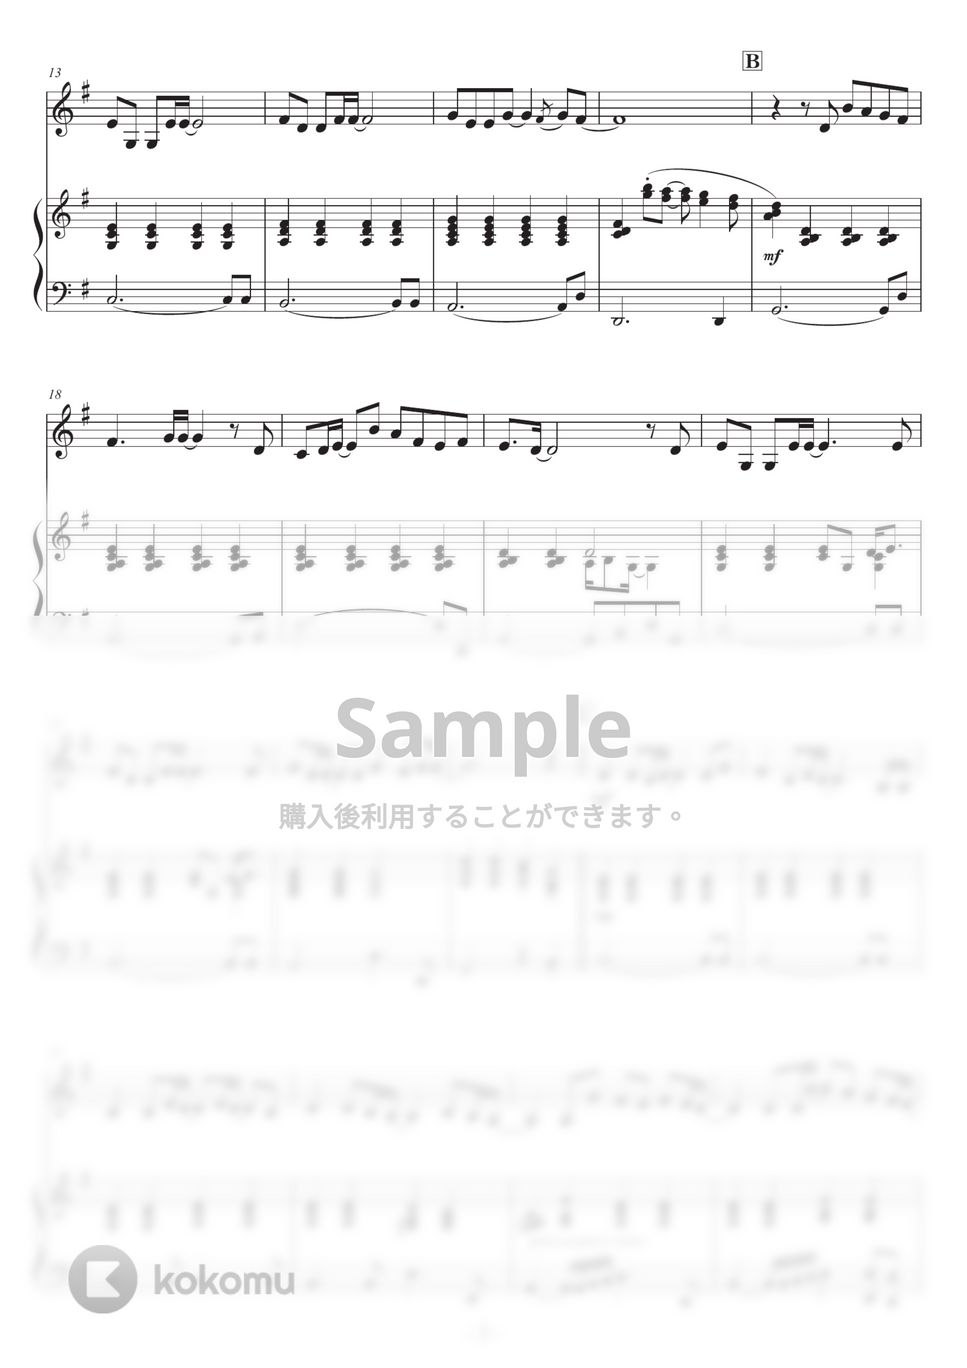 DREAMS COME TRUE - 【バイオリン】未来予想図Ⅱ (ピアノ伴奏付き) by 栗原義継